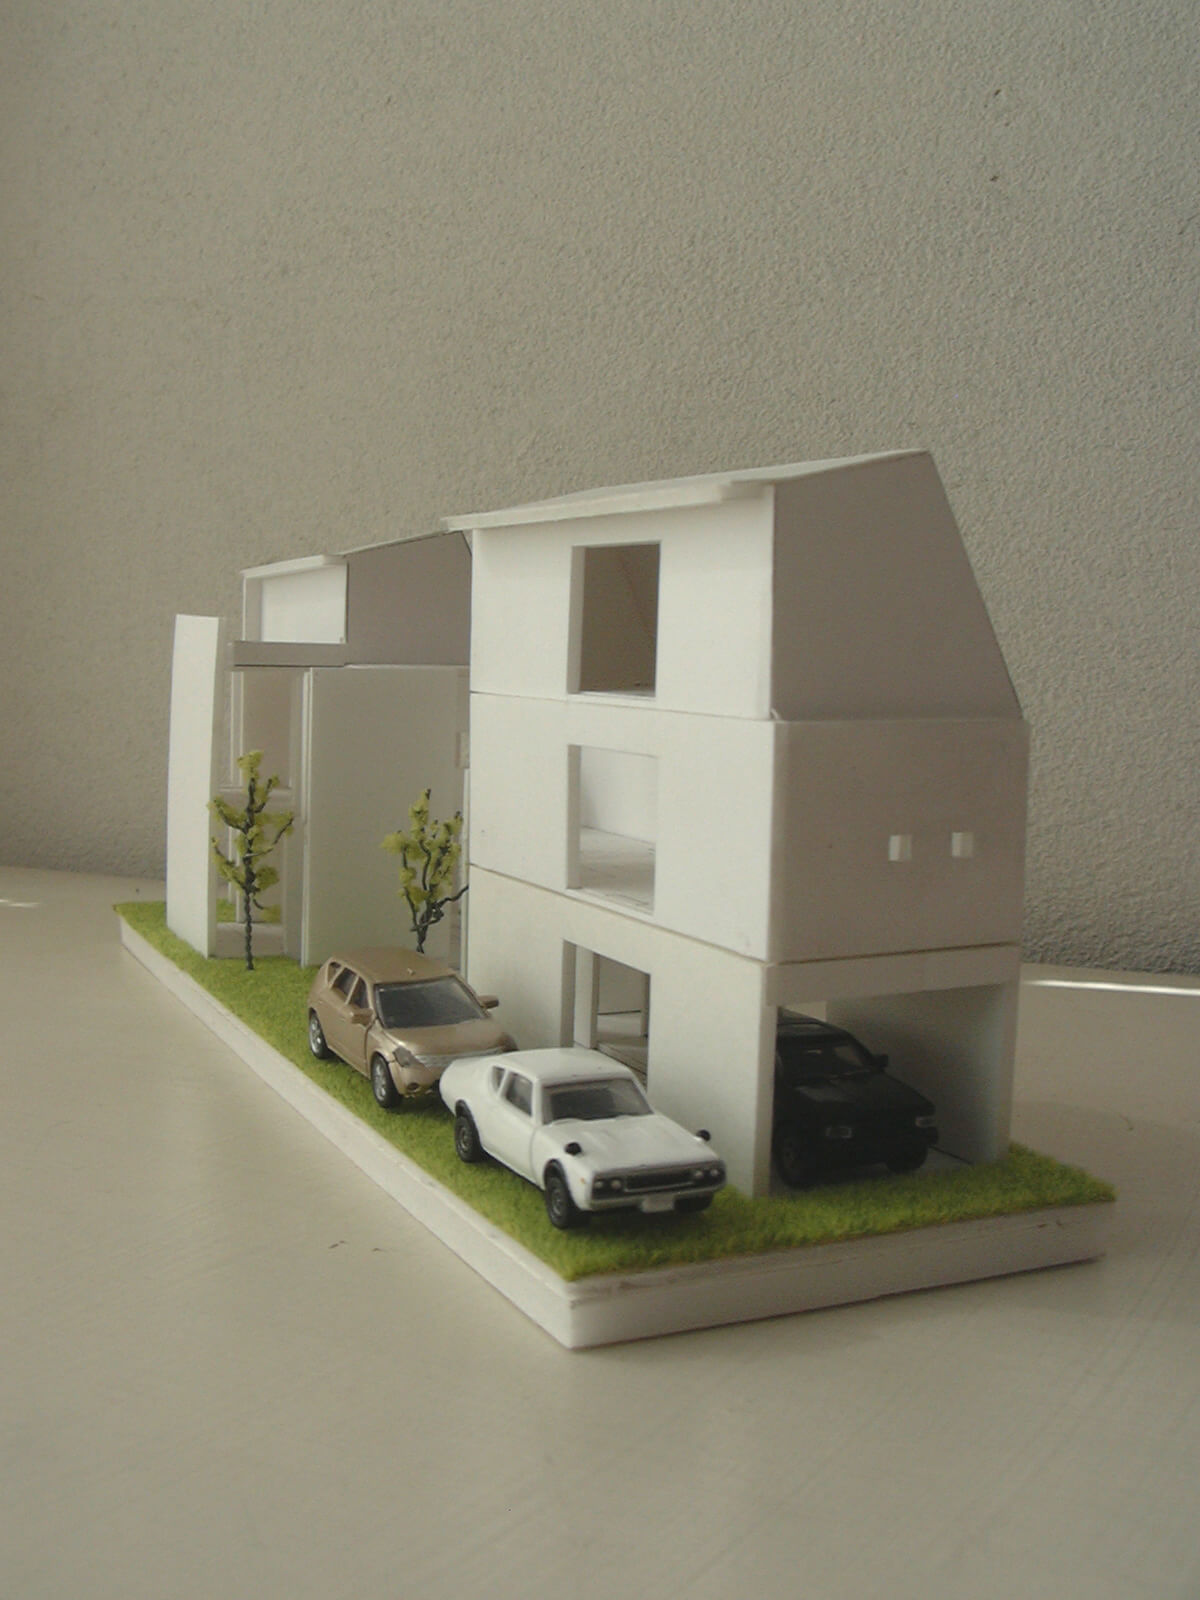 1/100の住宅模型と、その中におさめられた3台のミニカー